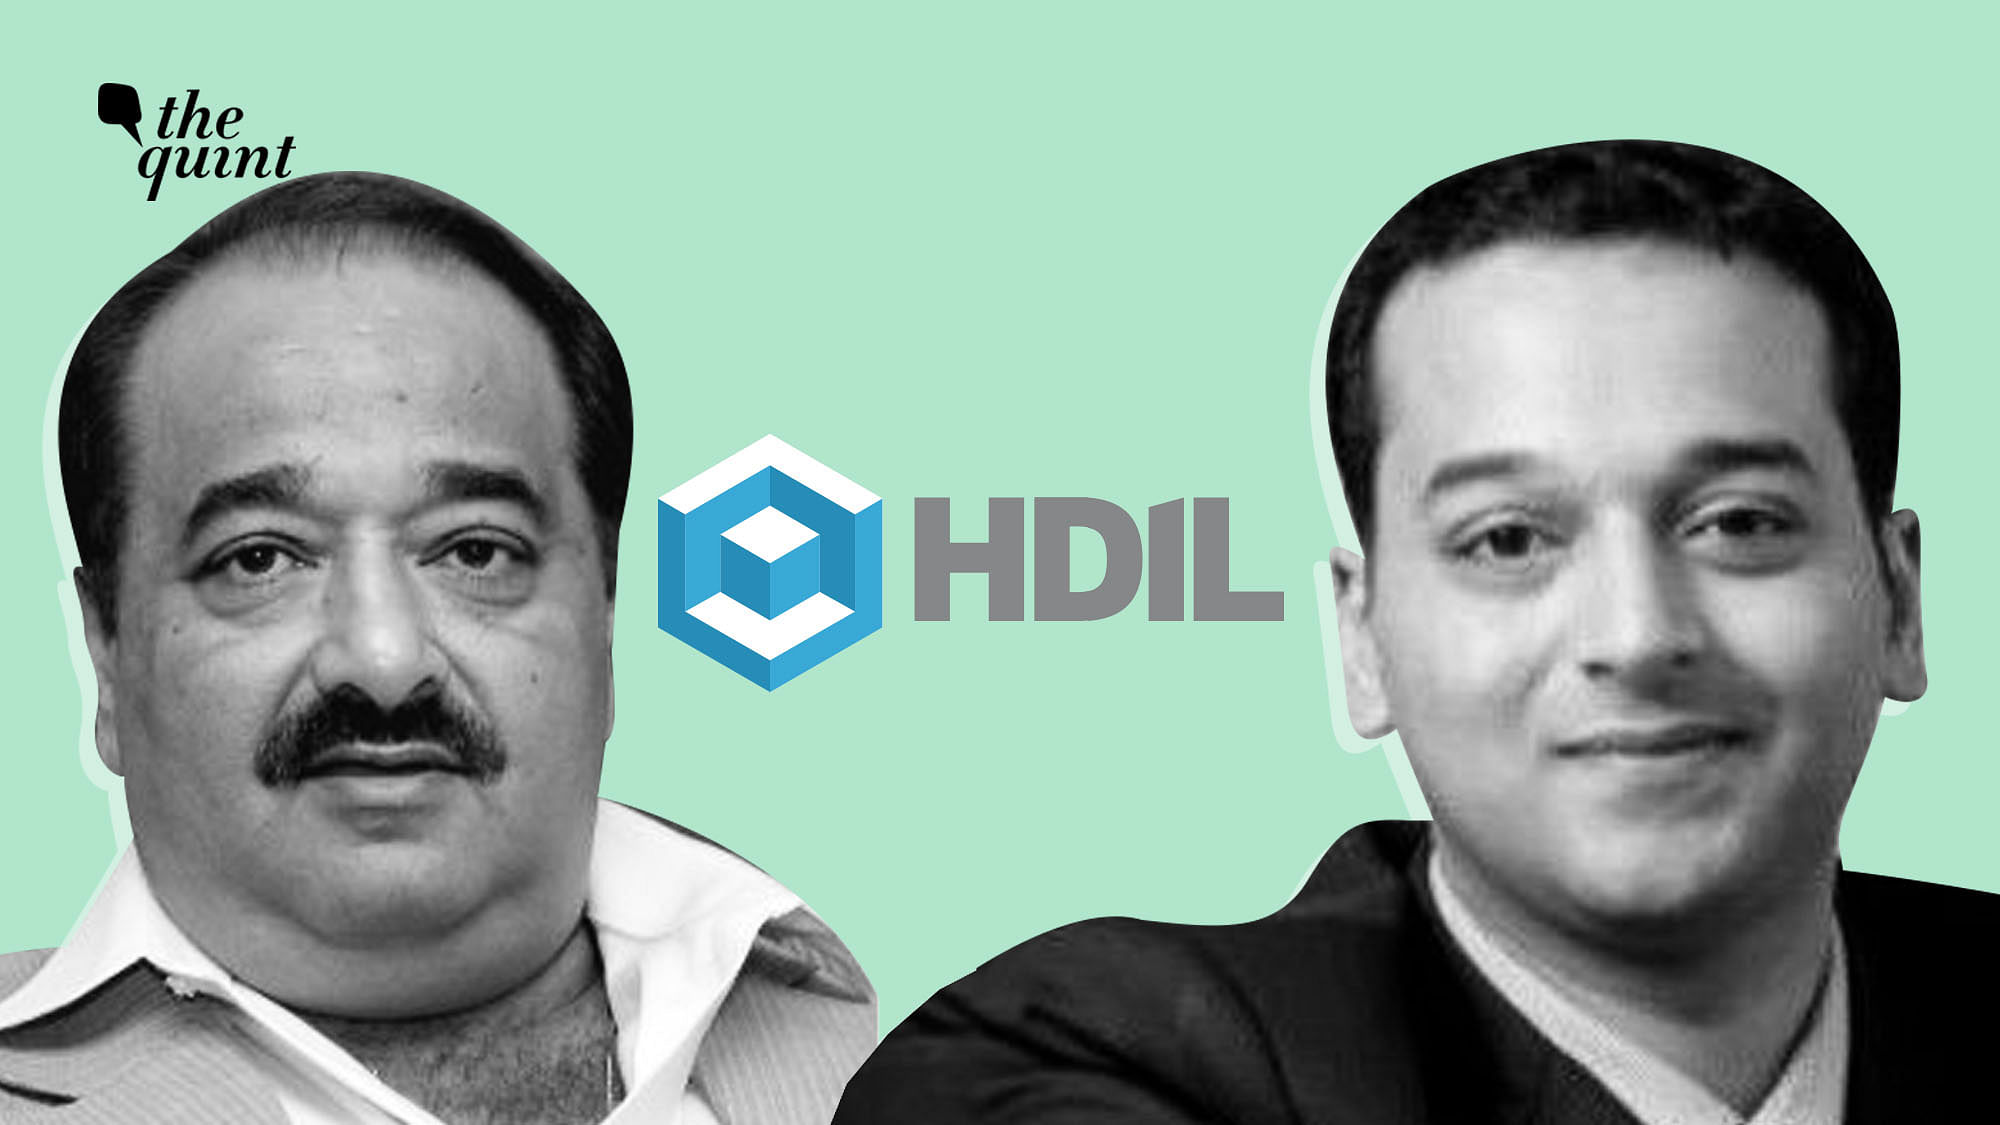 From left-right: HDIL Directors Rakesh Kumar and Sarang Wadhawan.  